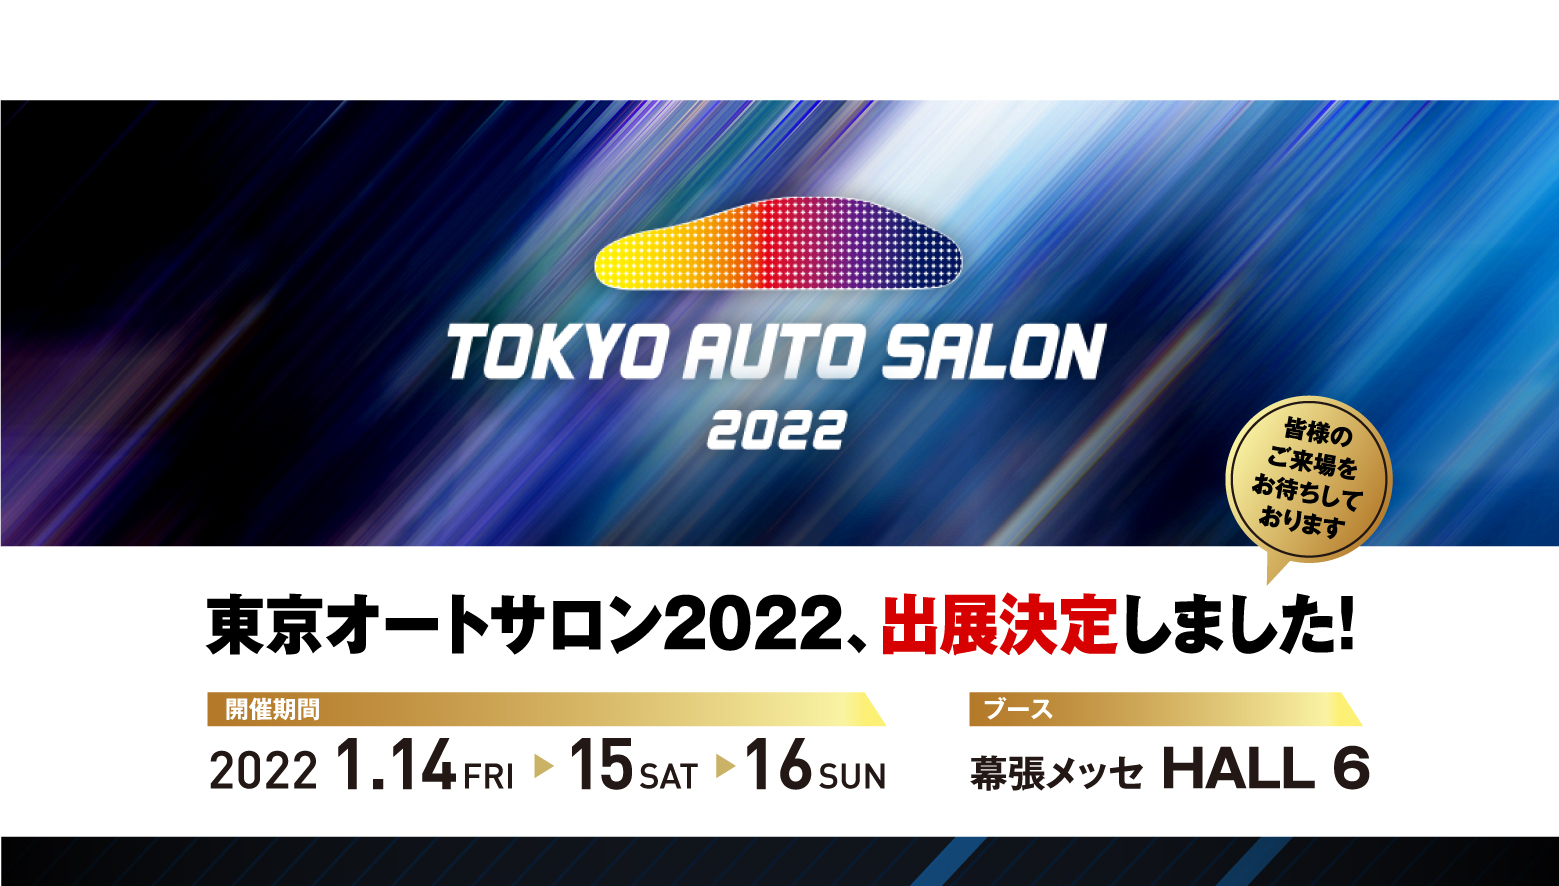 TOKYO AUTO SALON 2022 東京オートサロン2022、出展決定しました！皆様のご来場をお待ちしております 開催期間:2022 1.14FRI ▶ 15 SAT ▶ 16 SUN ブース:幕張メッセ HALL 6